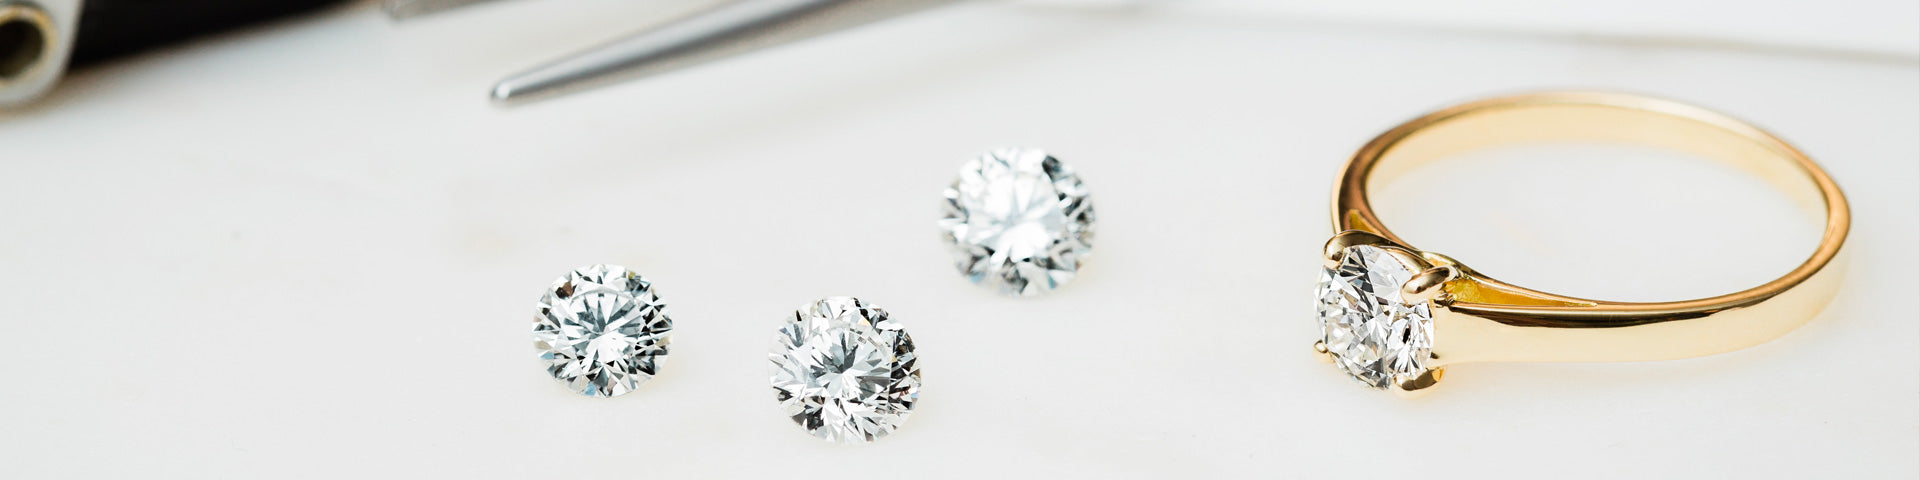 Diamant naturel vs diamant synthétique : <span>battle de la brillance</span>